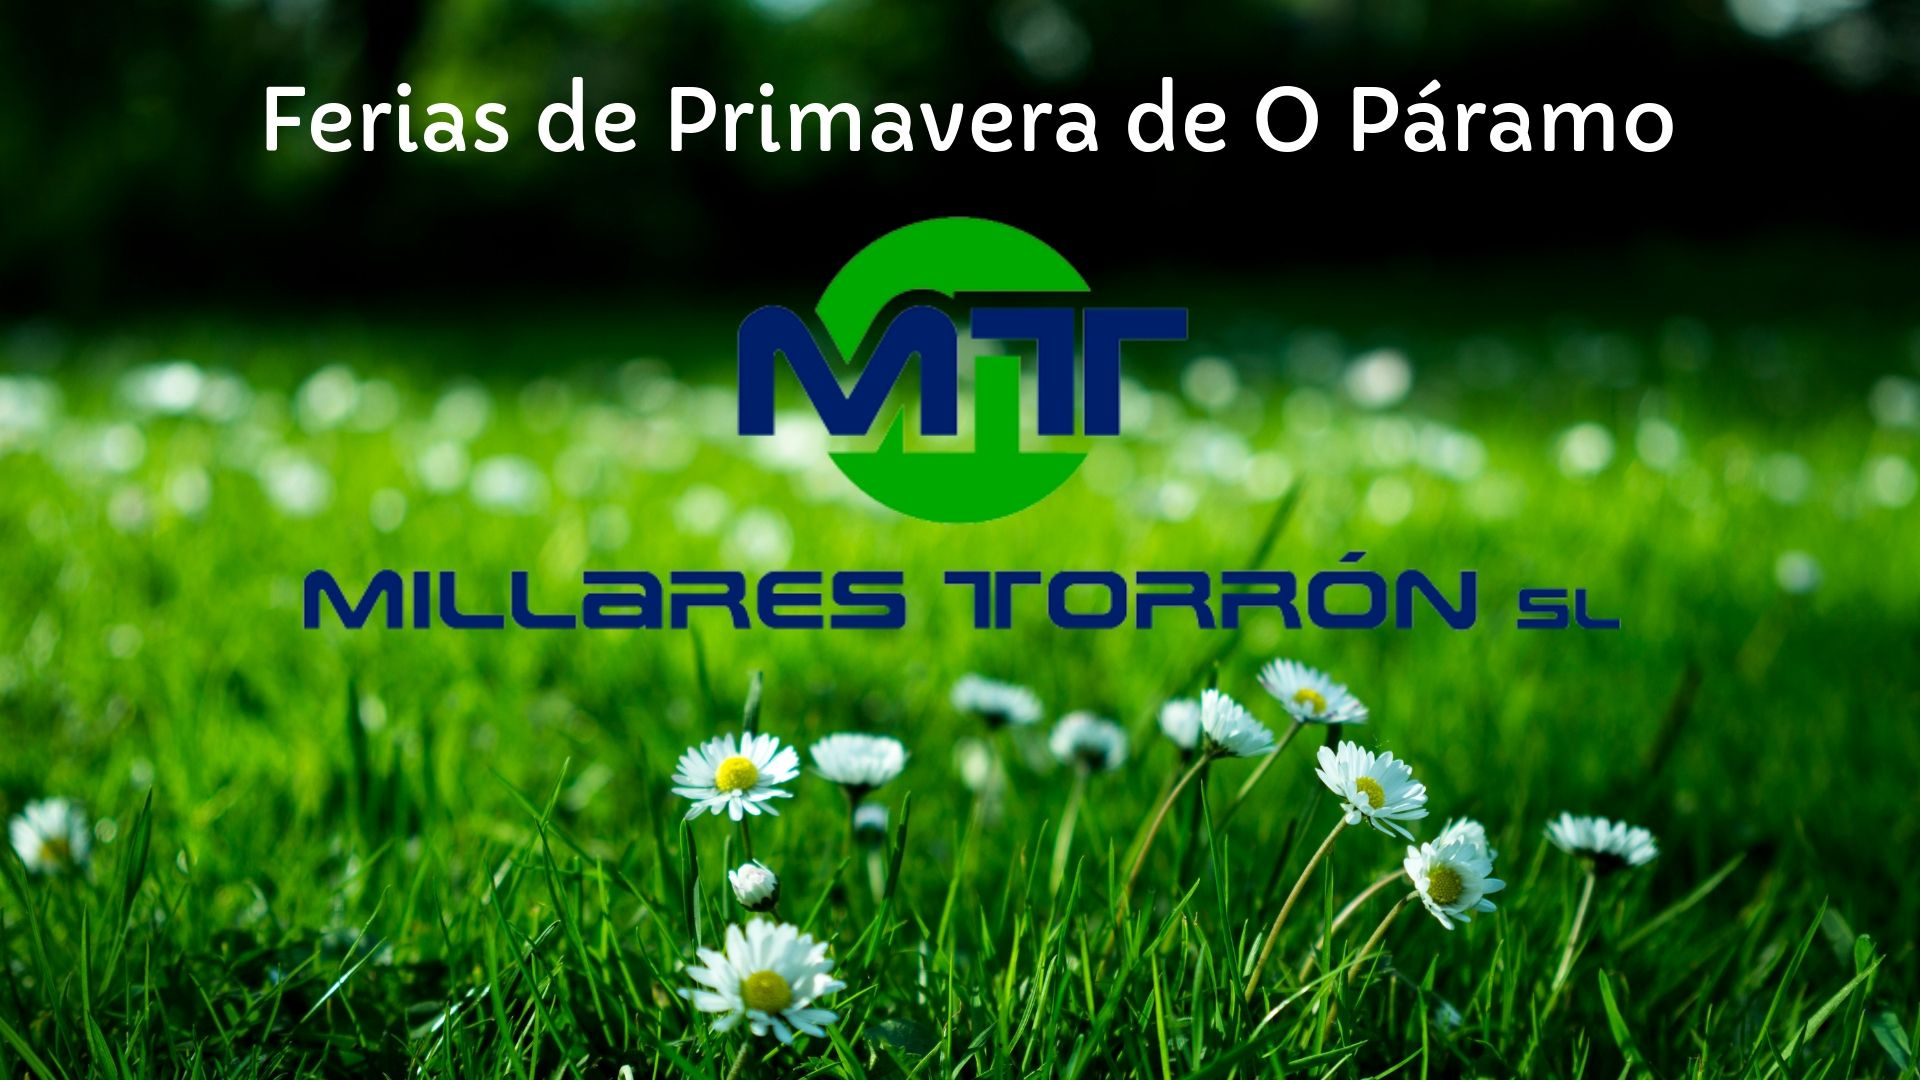 Millares Torrón estará en las Ferias de Primavera de O Paramo del 7 al 9 de junio 2.1920